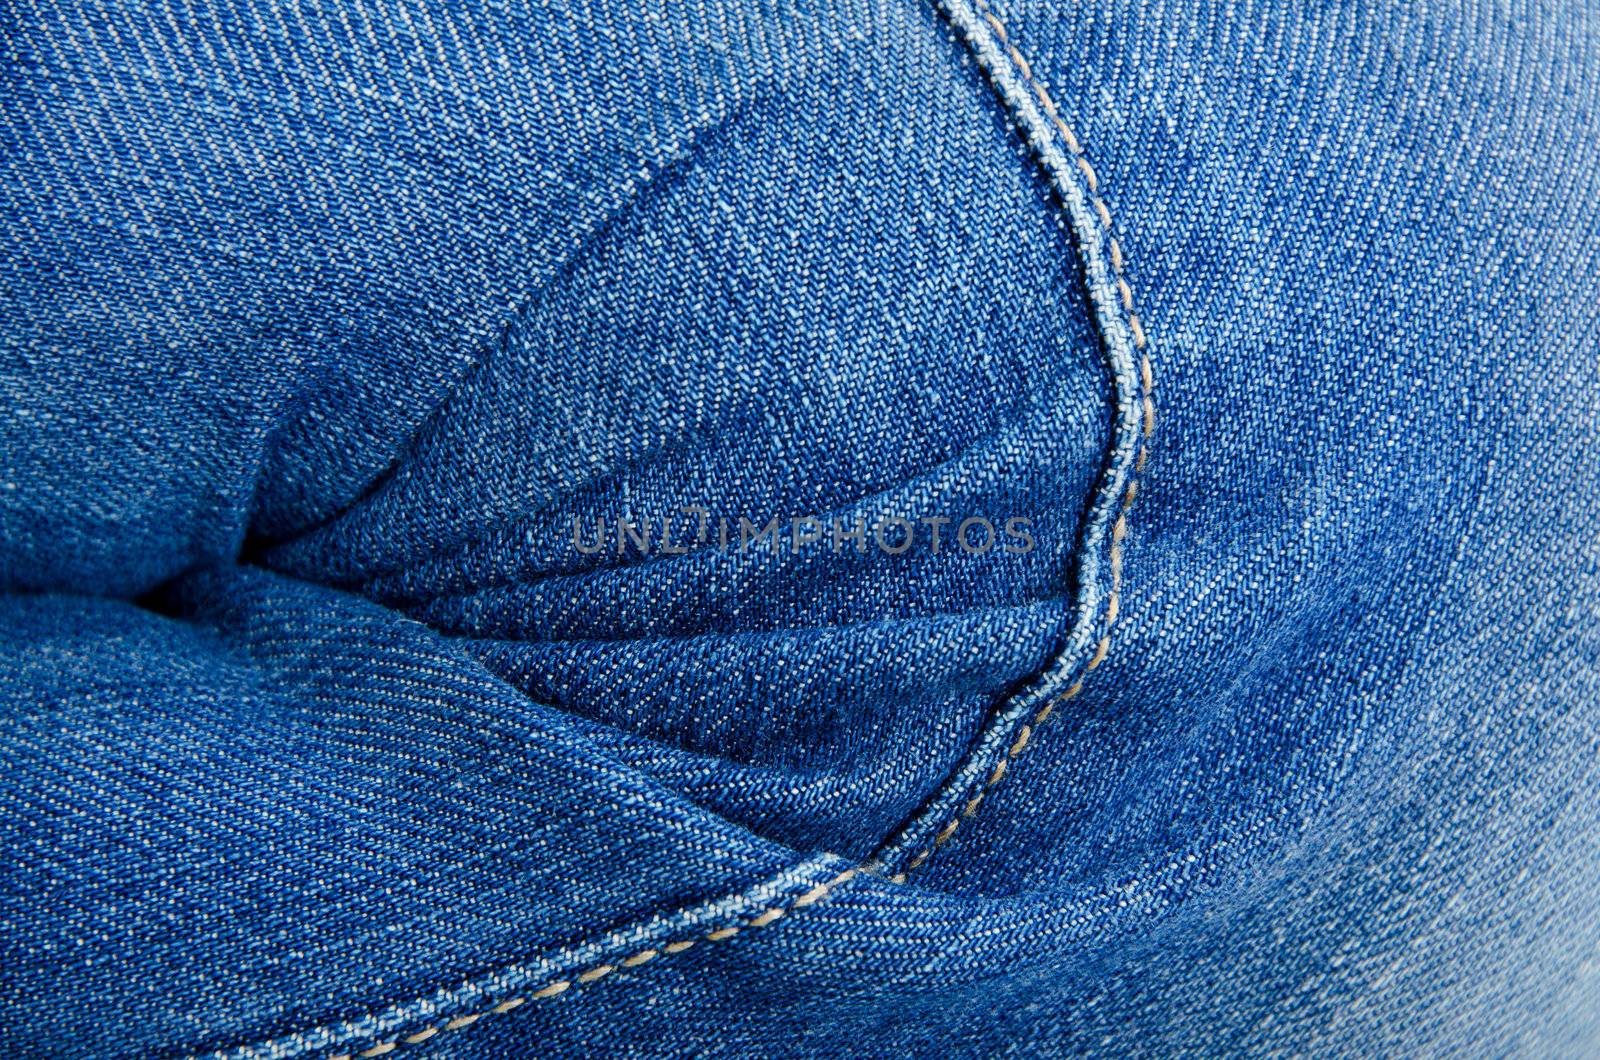 Women's knee in jeans closeup by Sergieiev